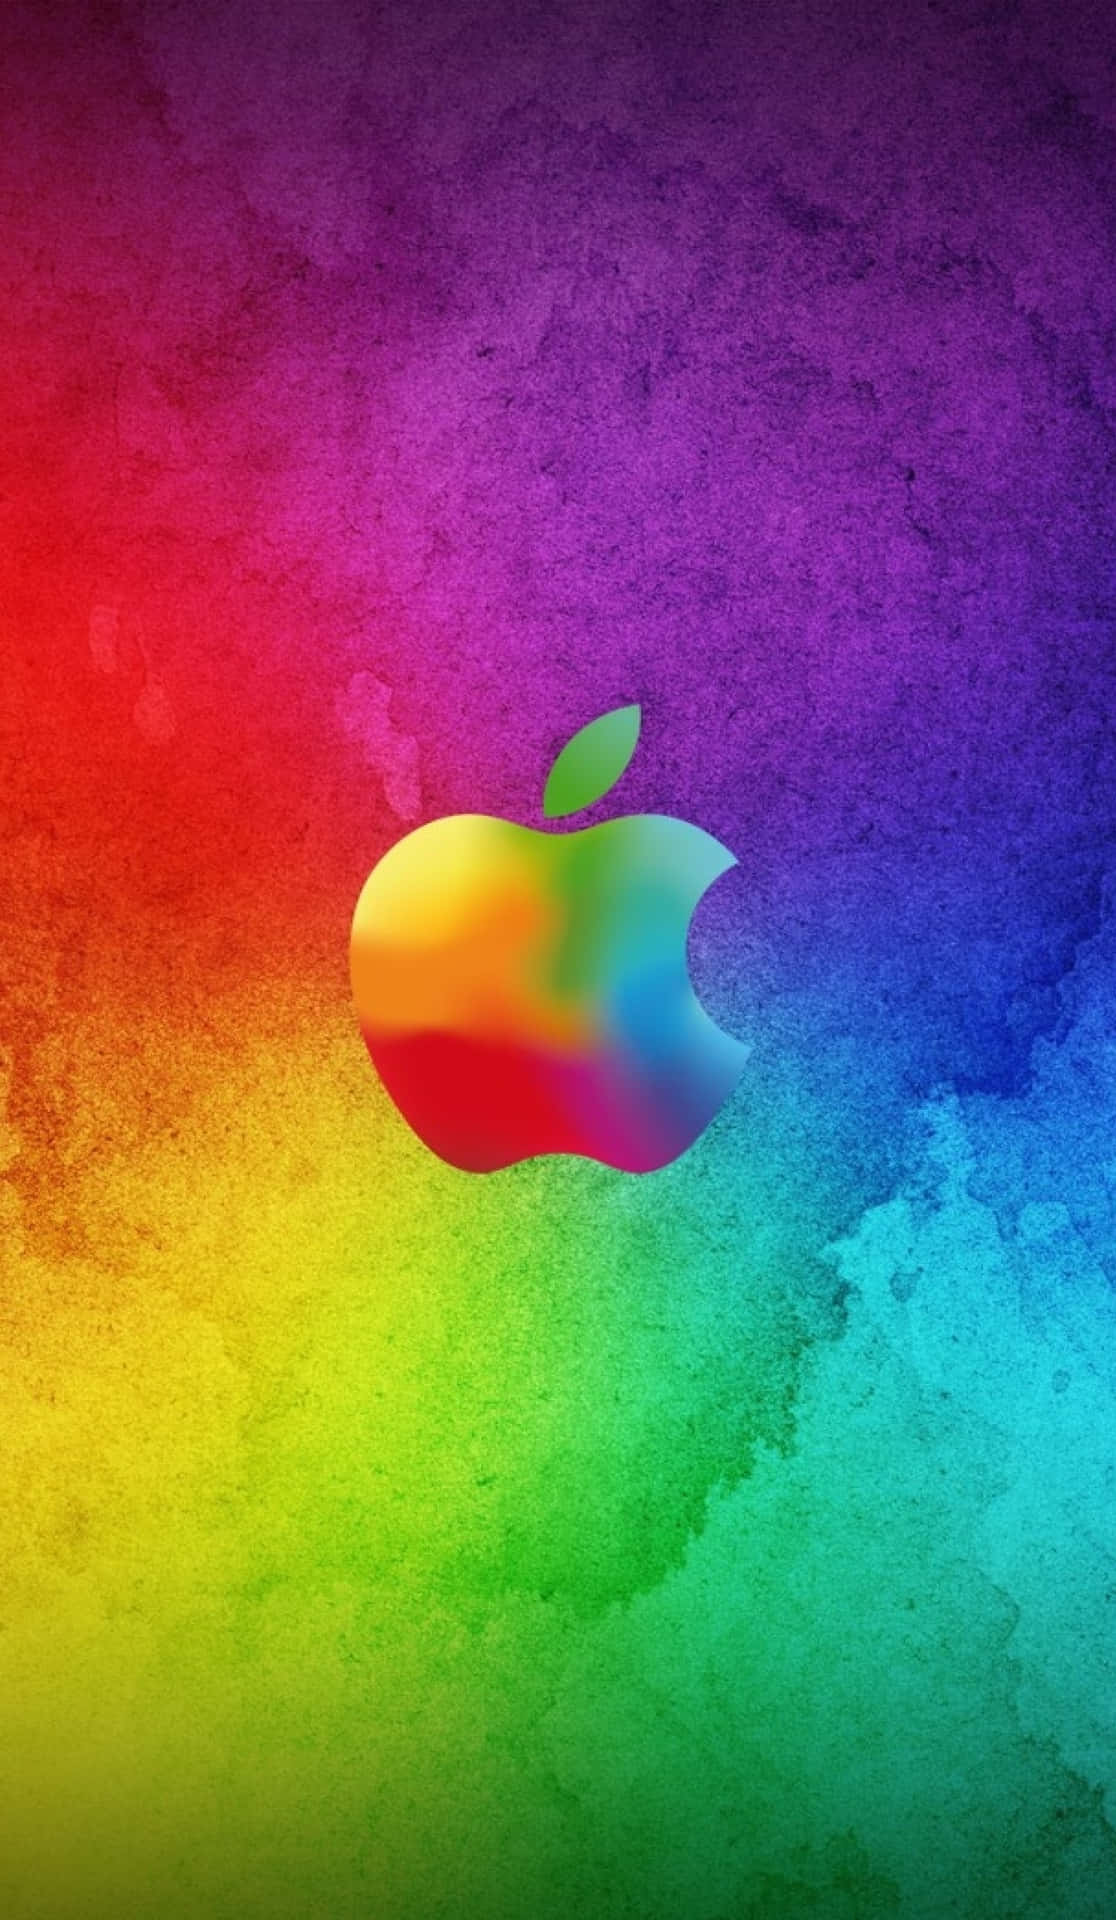 Regnbågsakvarellfantastisk Äppel Hd-iphone Bakgrundsbild. Wallpaper